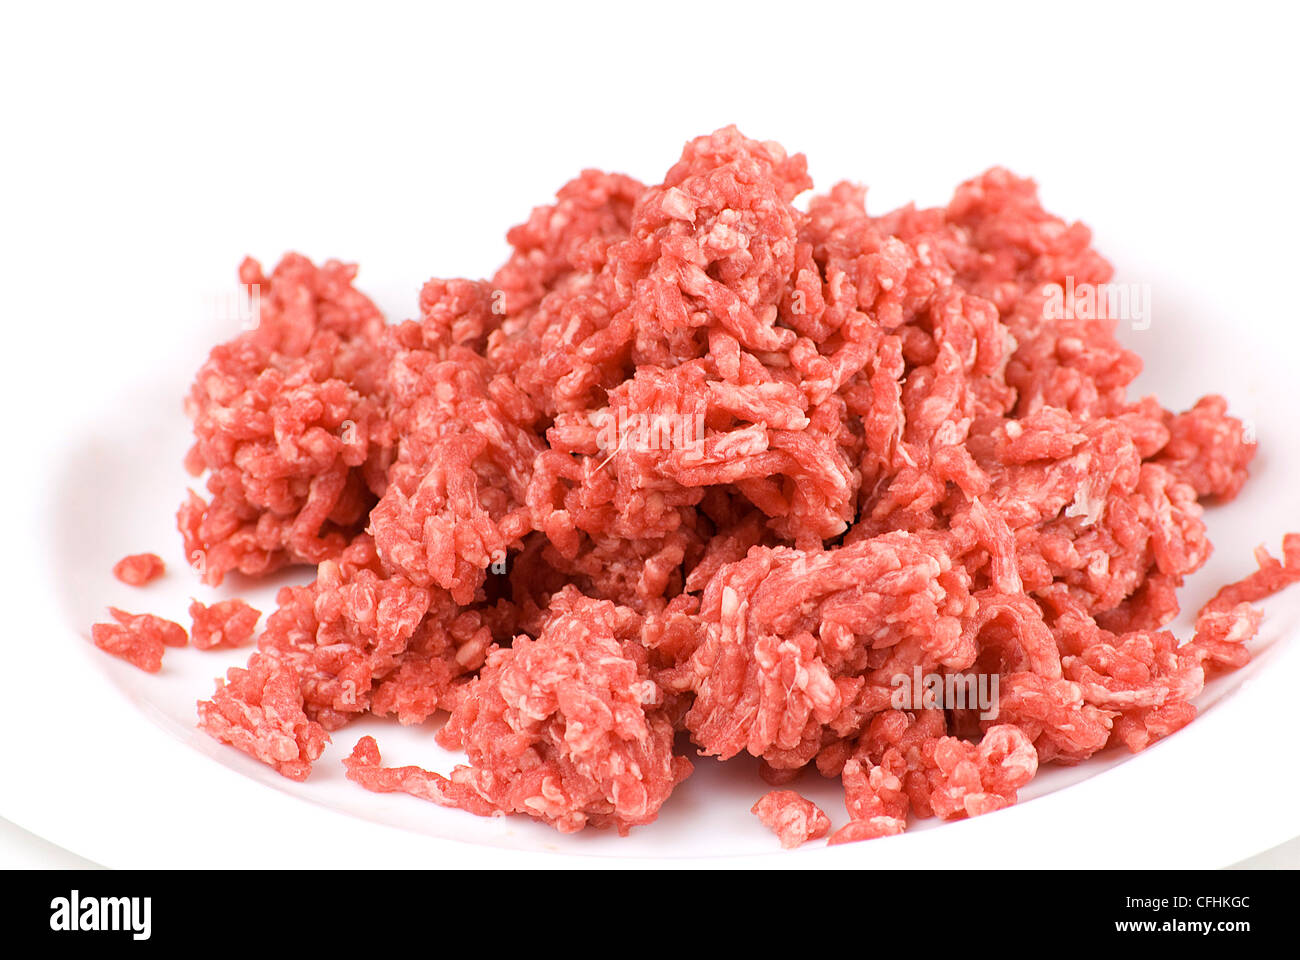 Haufen von frisches rohes Rindfleisch Hackfleisch in weißer Teller Stockfoto